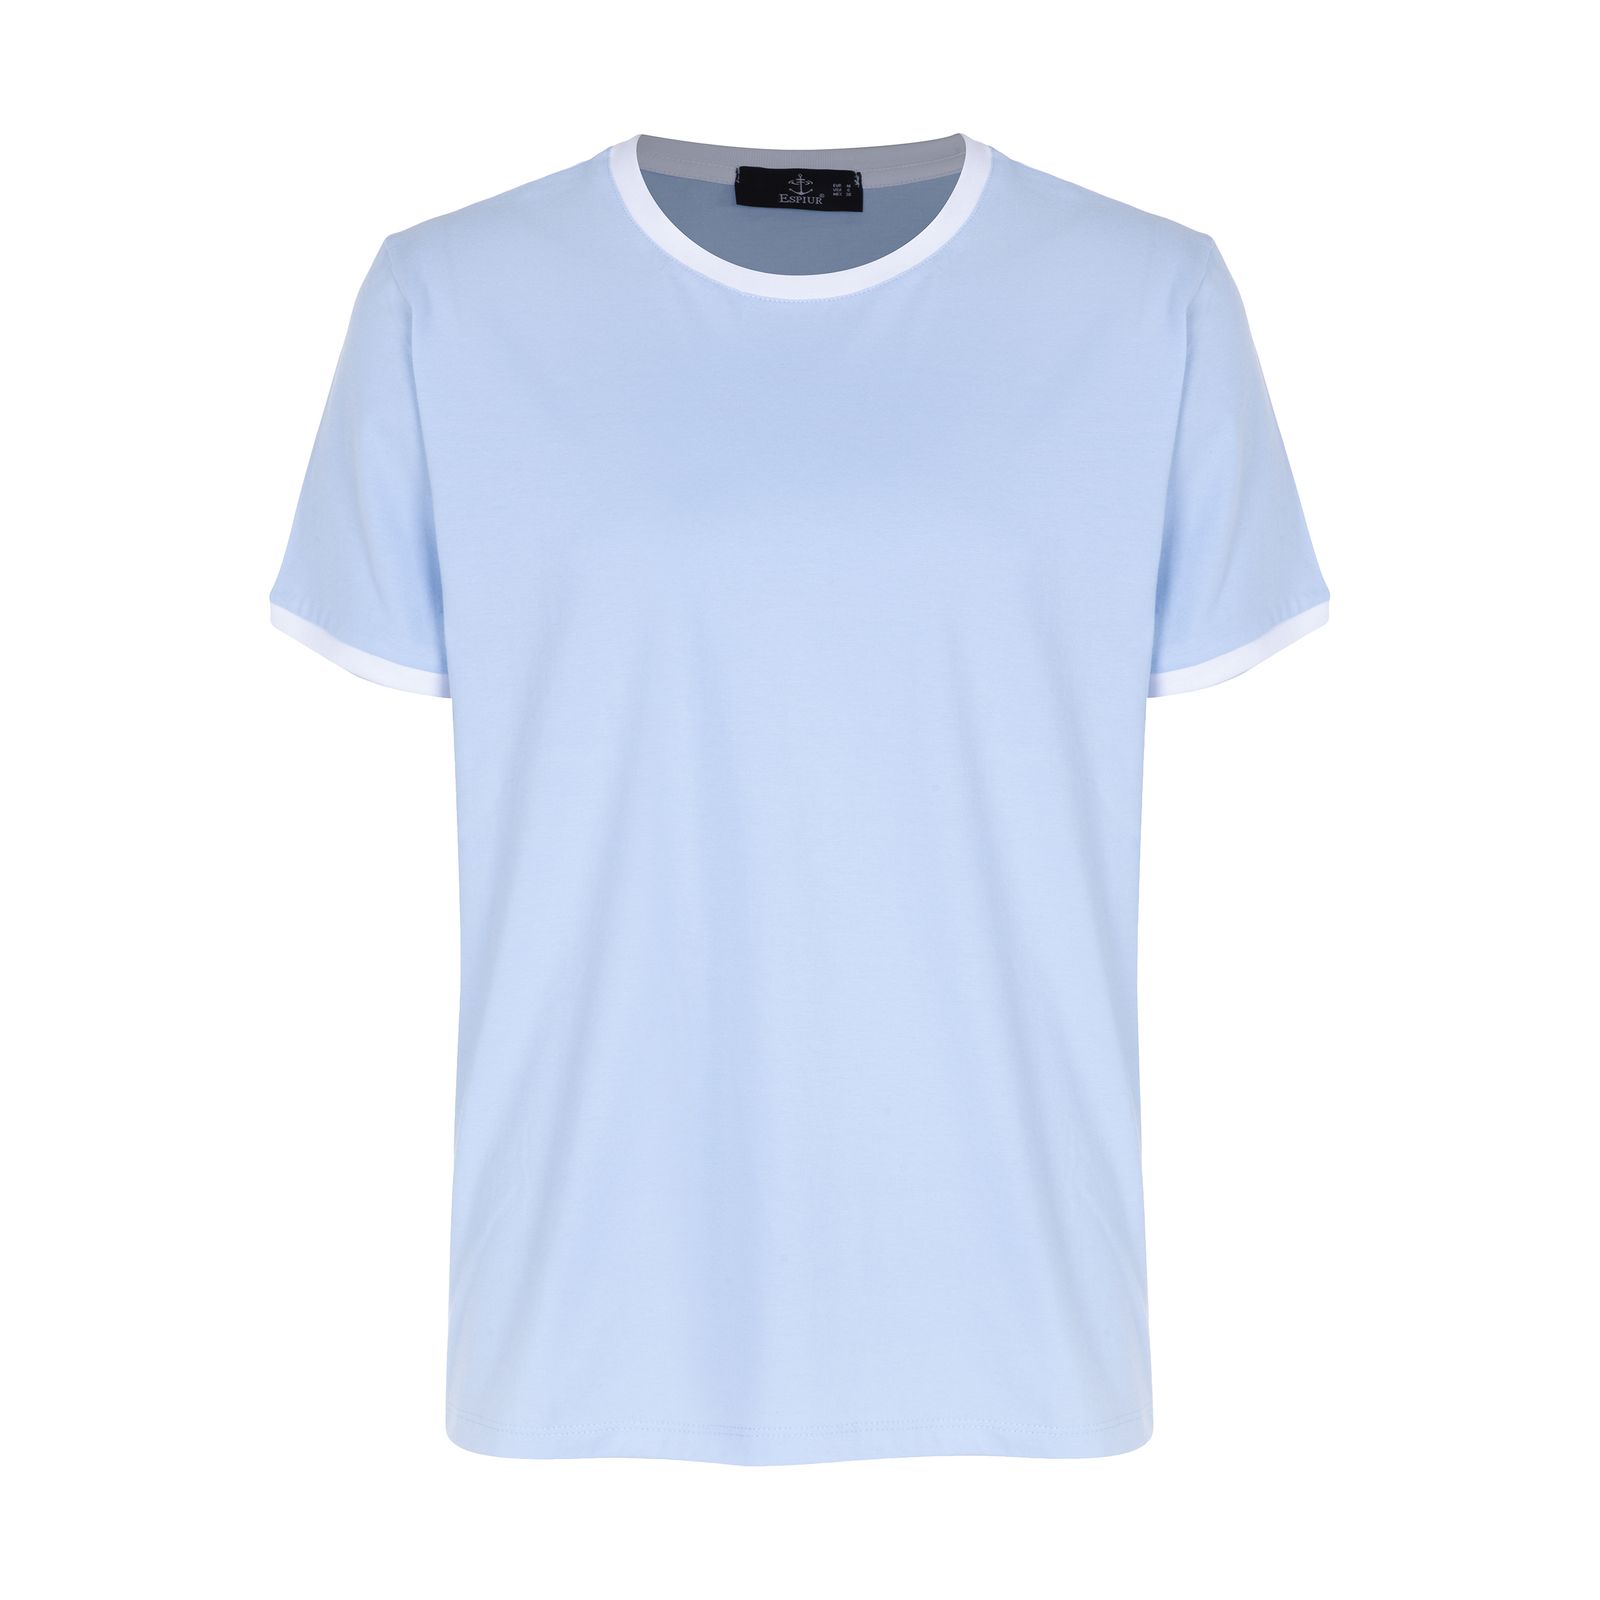 تی شرت آستین کوتاه مردانه اسپیور مدل TMA16-48 -  - 1